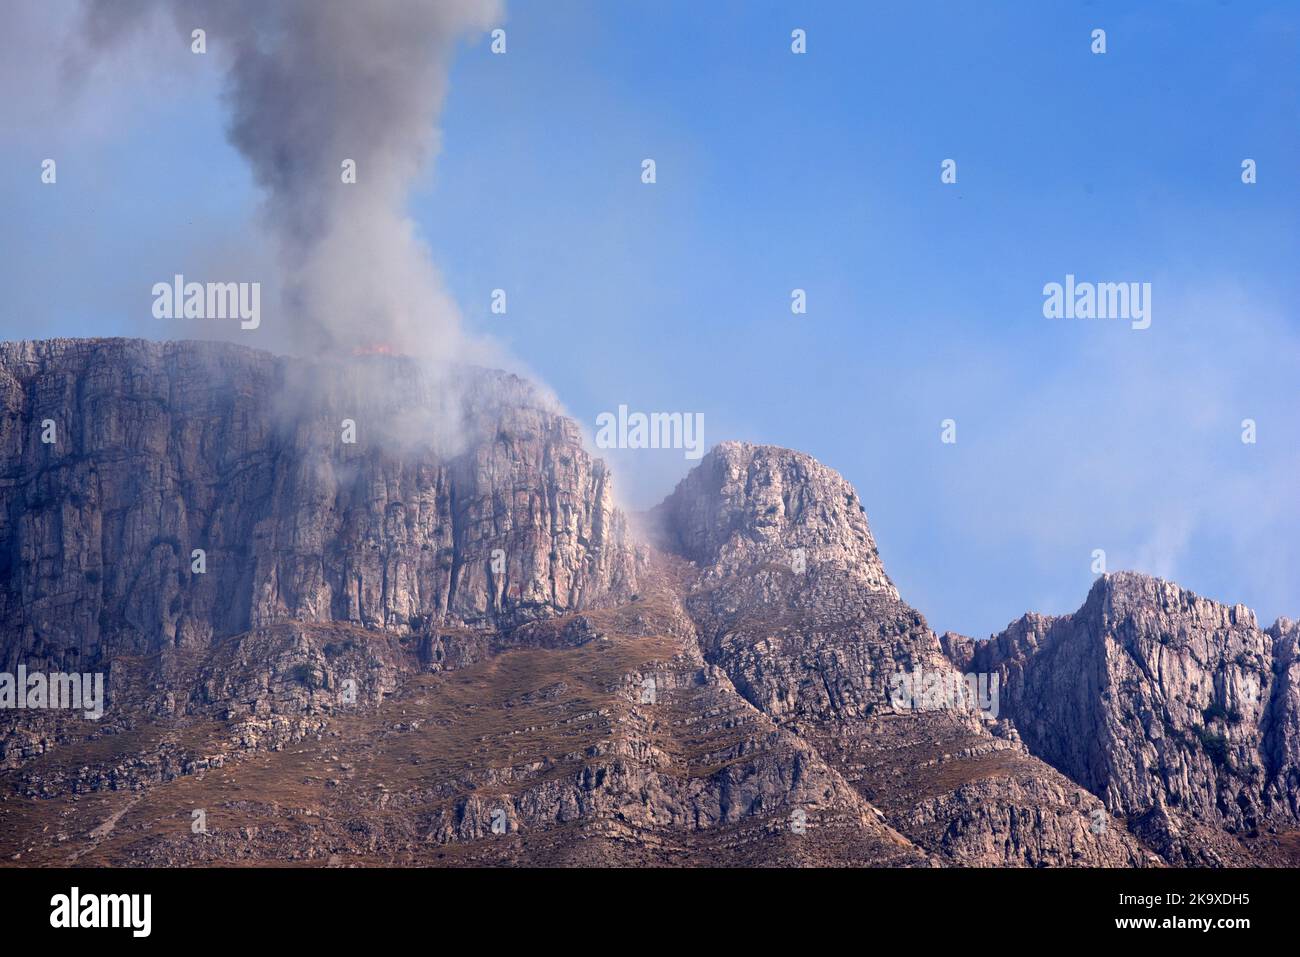 Rauch aus wildem Feuer, Buschfeuer oder Waldbrand auf dem Bergrücken von Les Traversières in den Verdon-Unteralpen Alpes-de-Haute-Provence Frankreich Stockfoto